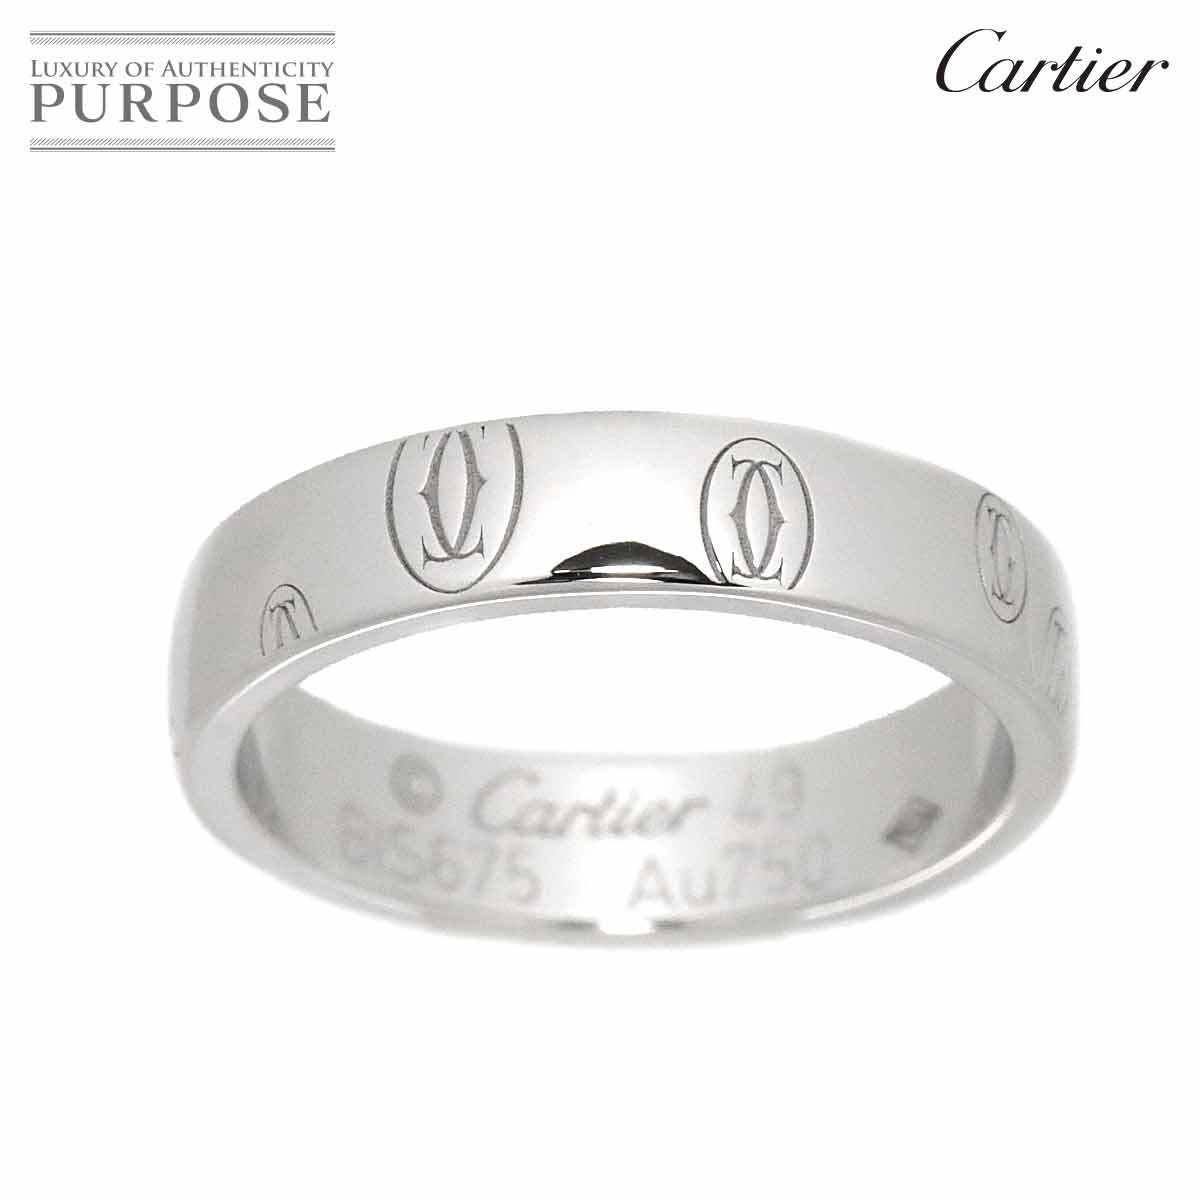 カルティエ Cartier ロゴ リング #49 ハッピーバースデー K18 WG ホワイトゴールド 750 指輪 Happy birthday Ring【証明書付き】 90180492